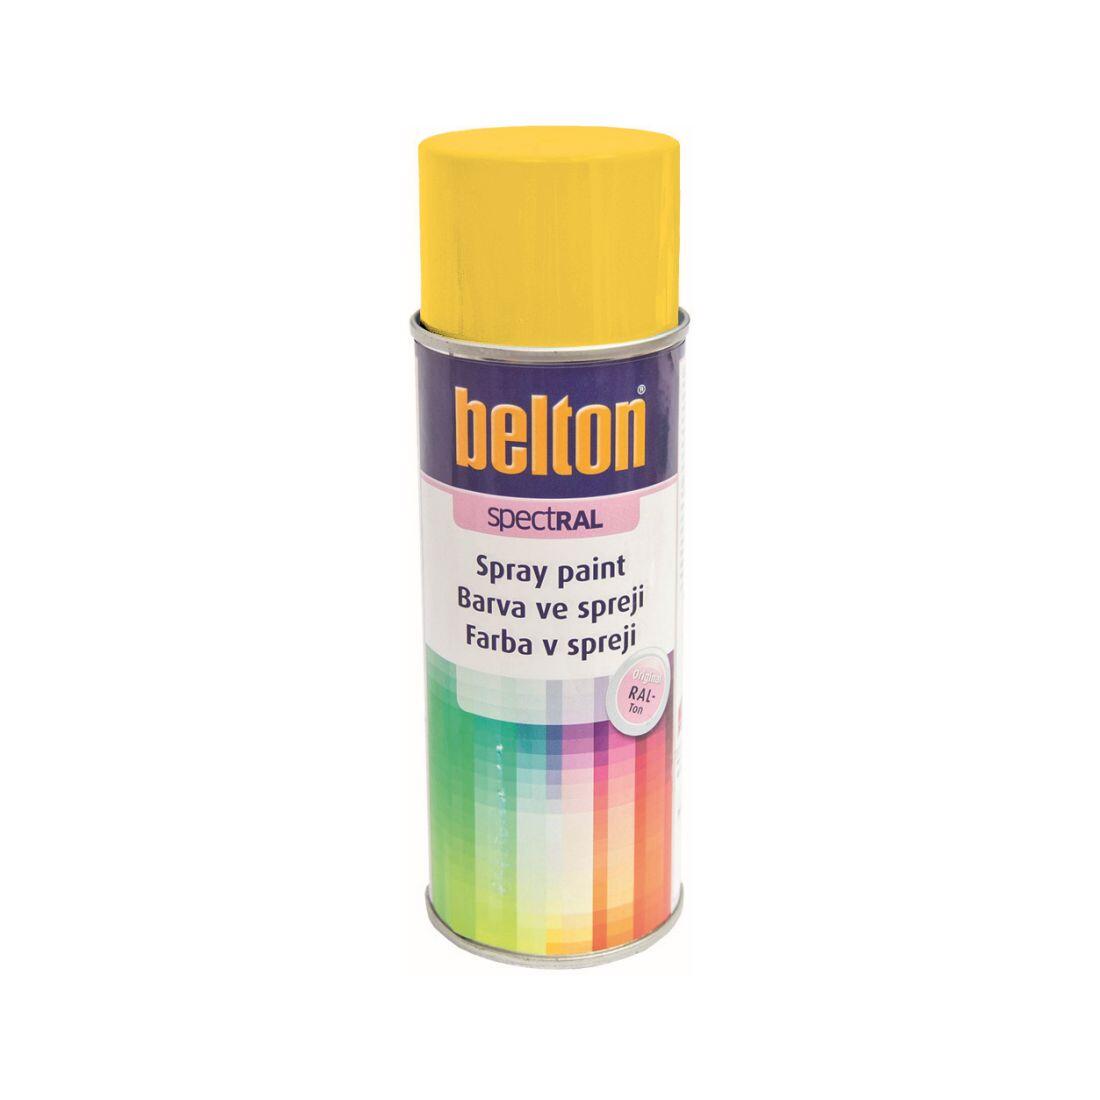 barva ve spreji BELTON RAL 1021, 400ml ŽL hořčičná 0.31 Kg MAXMIX Sklad14 825380 13